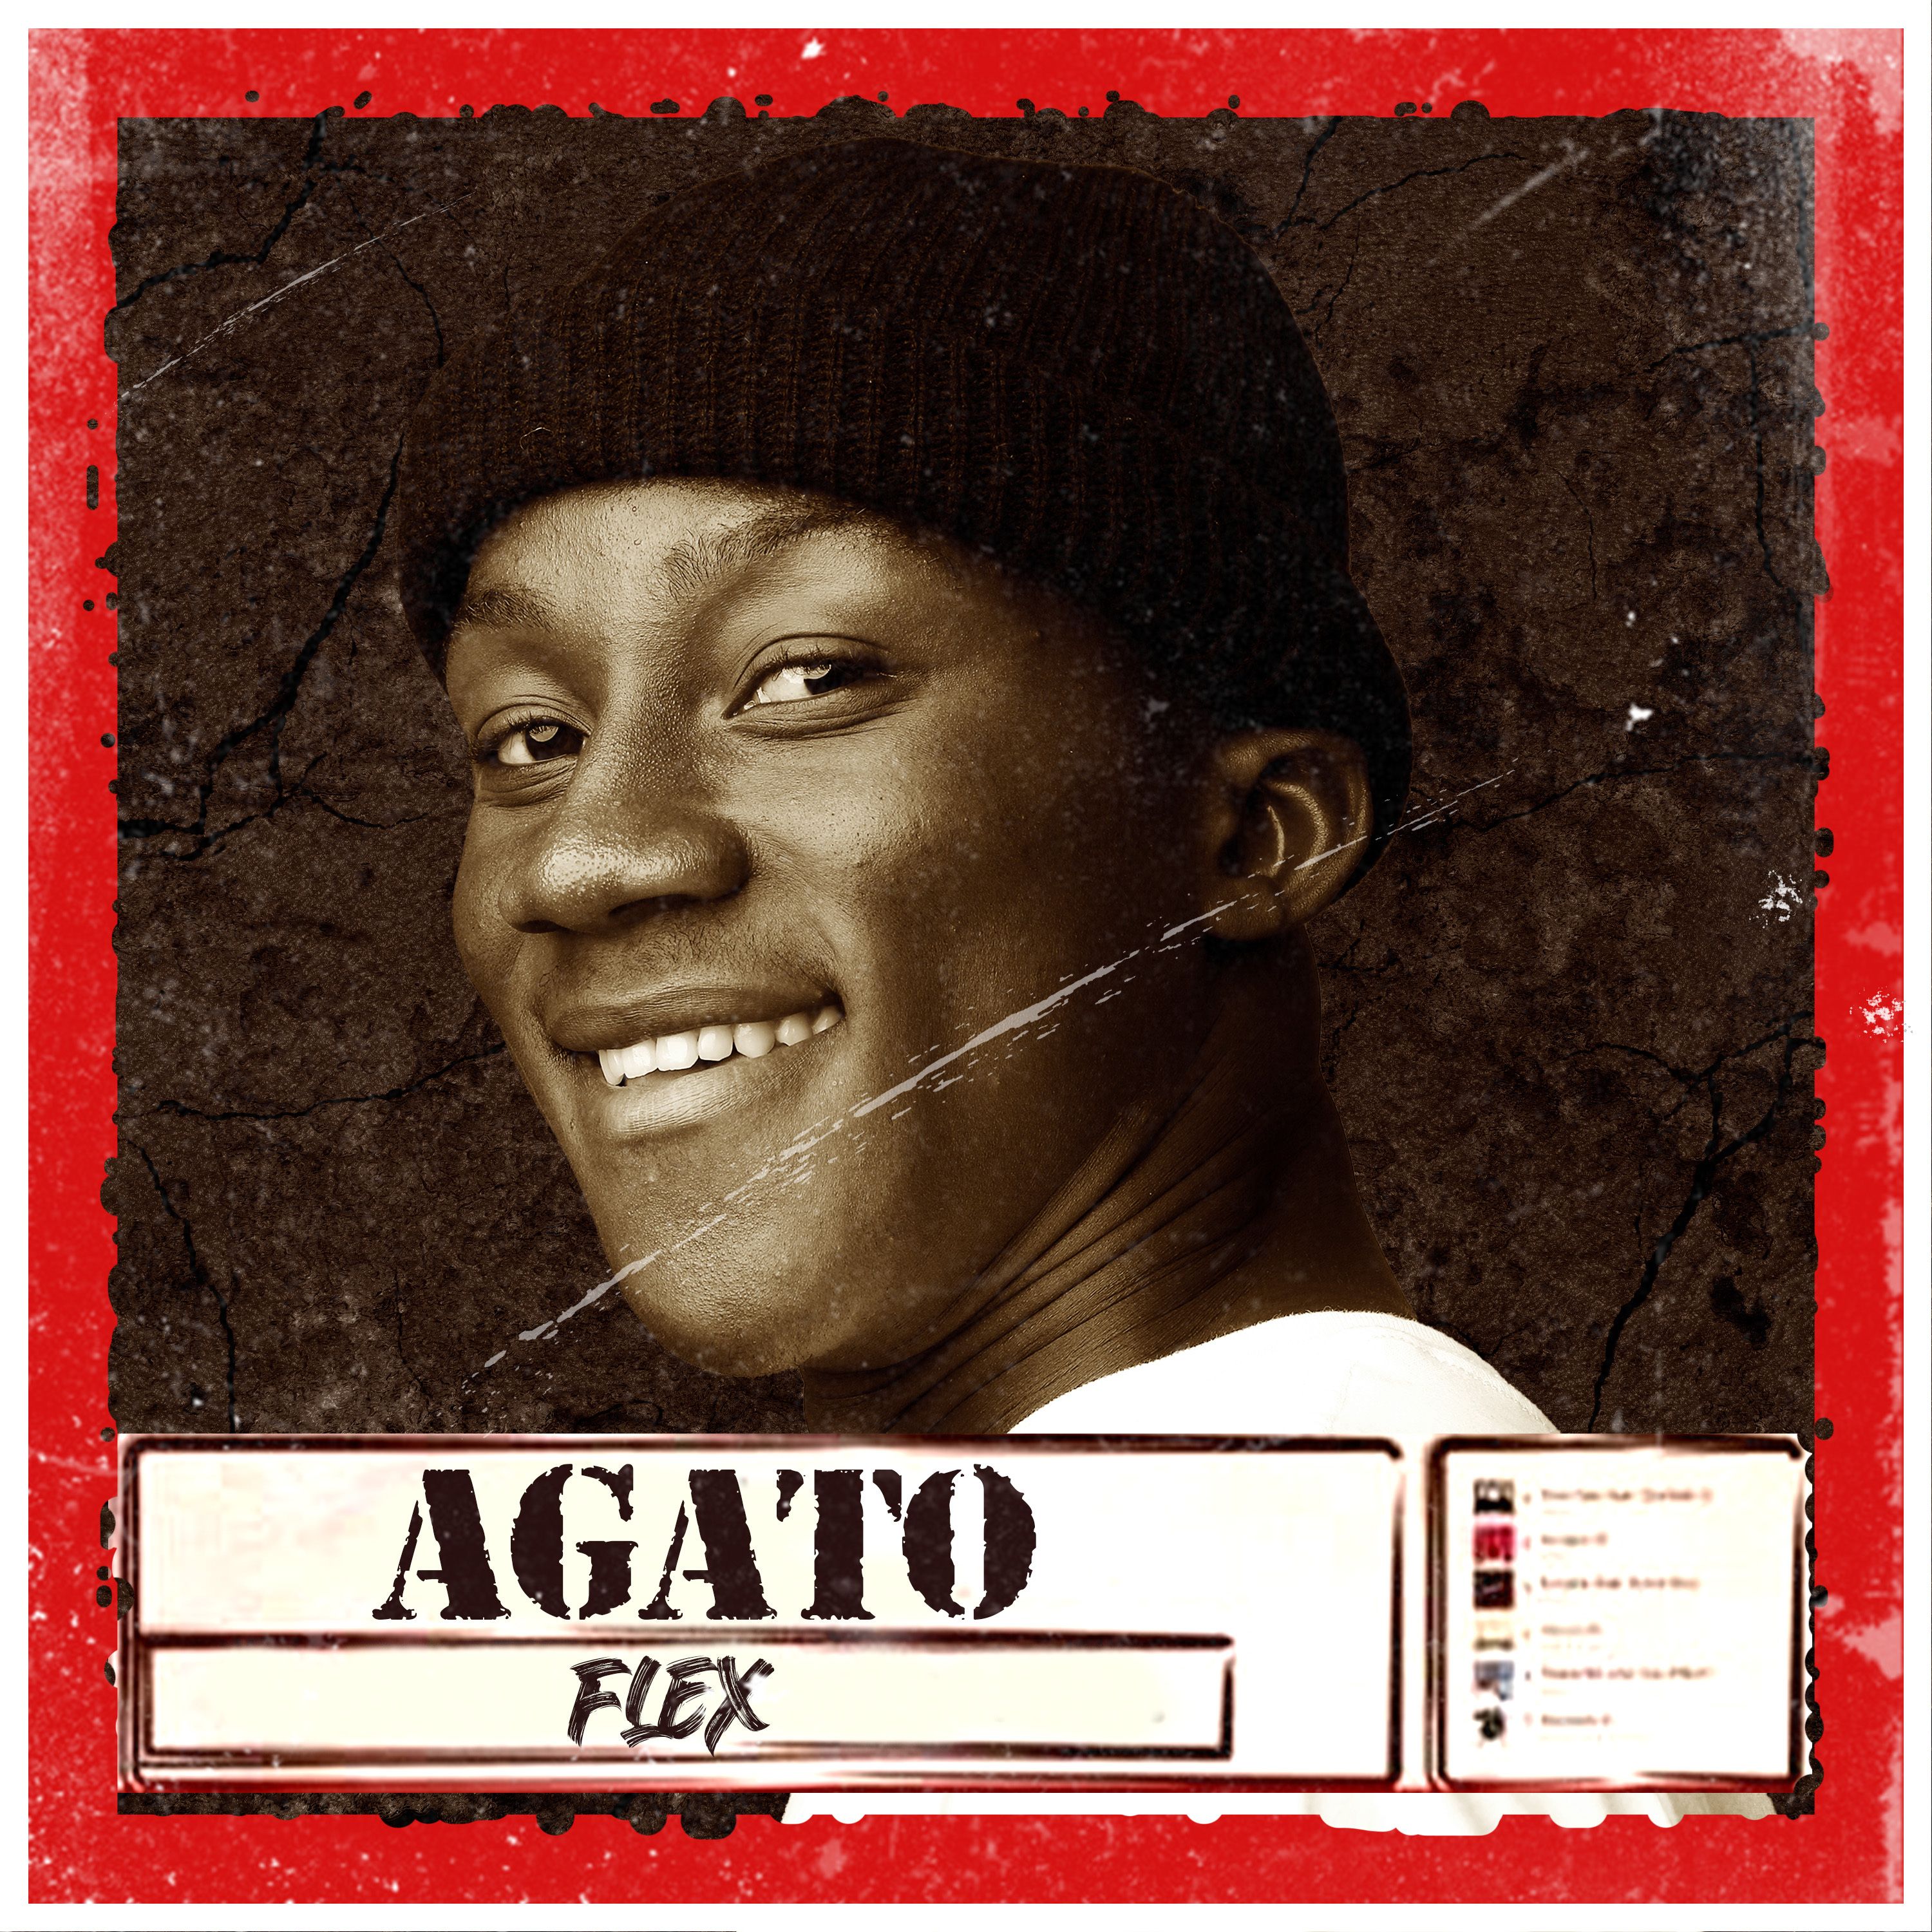 Agato - Flex